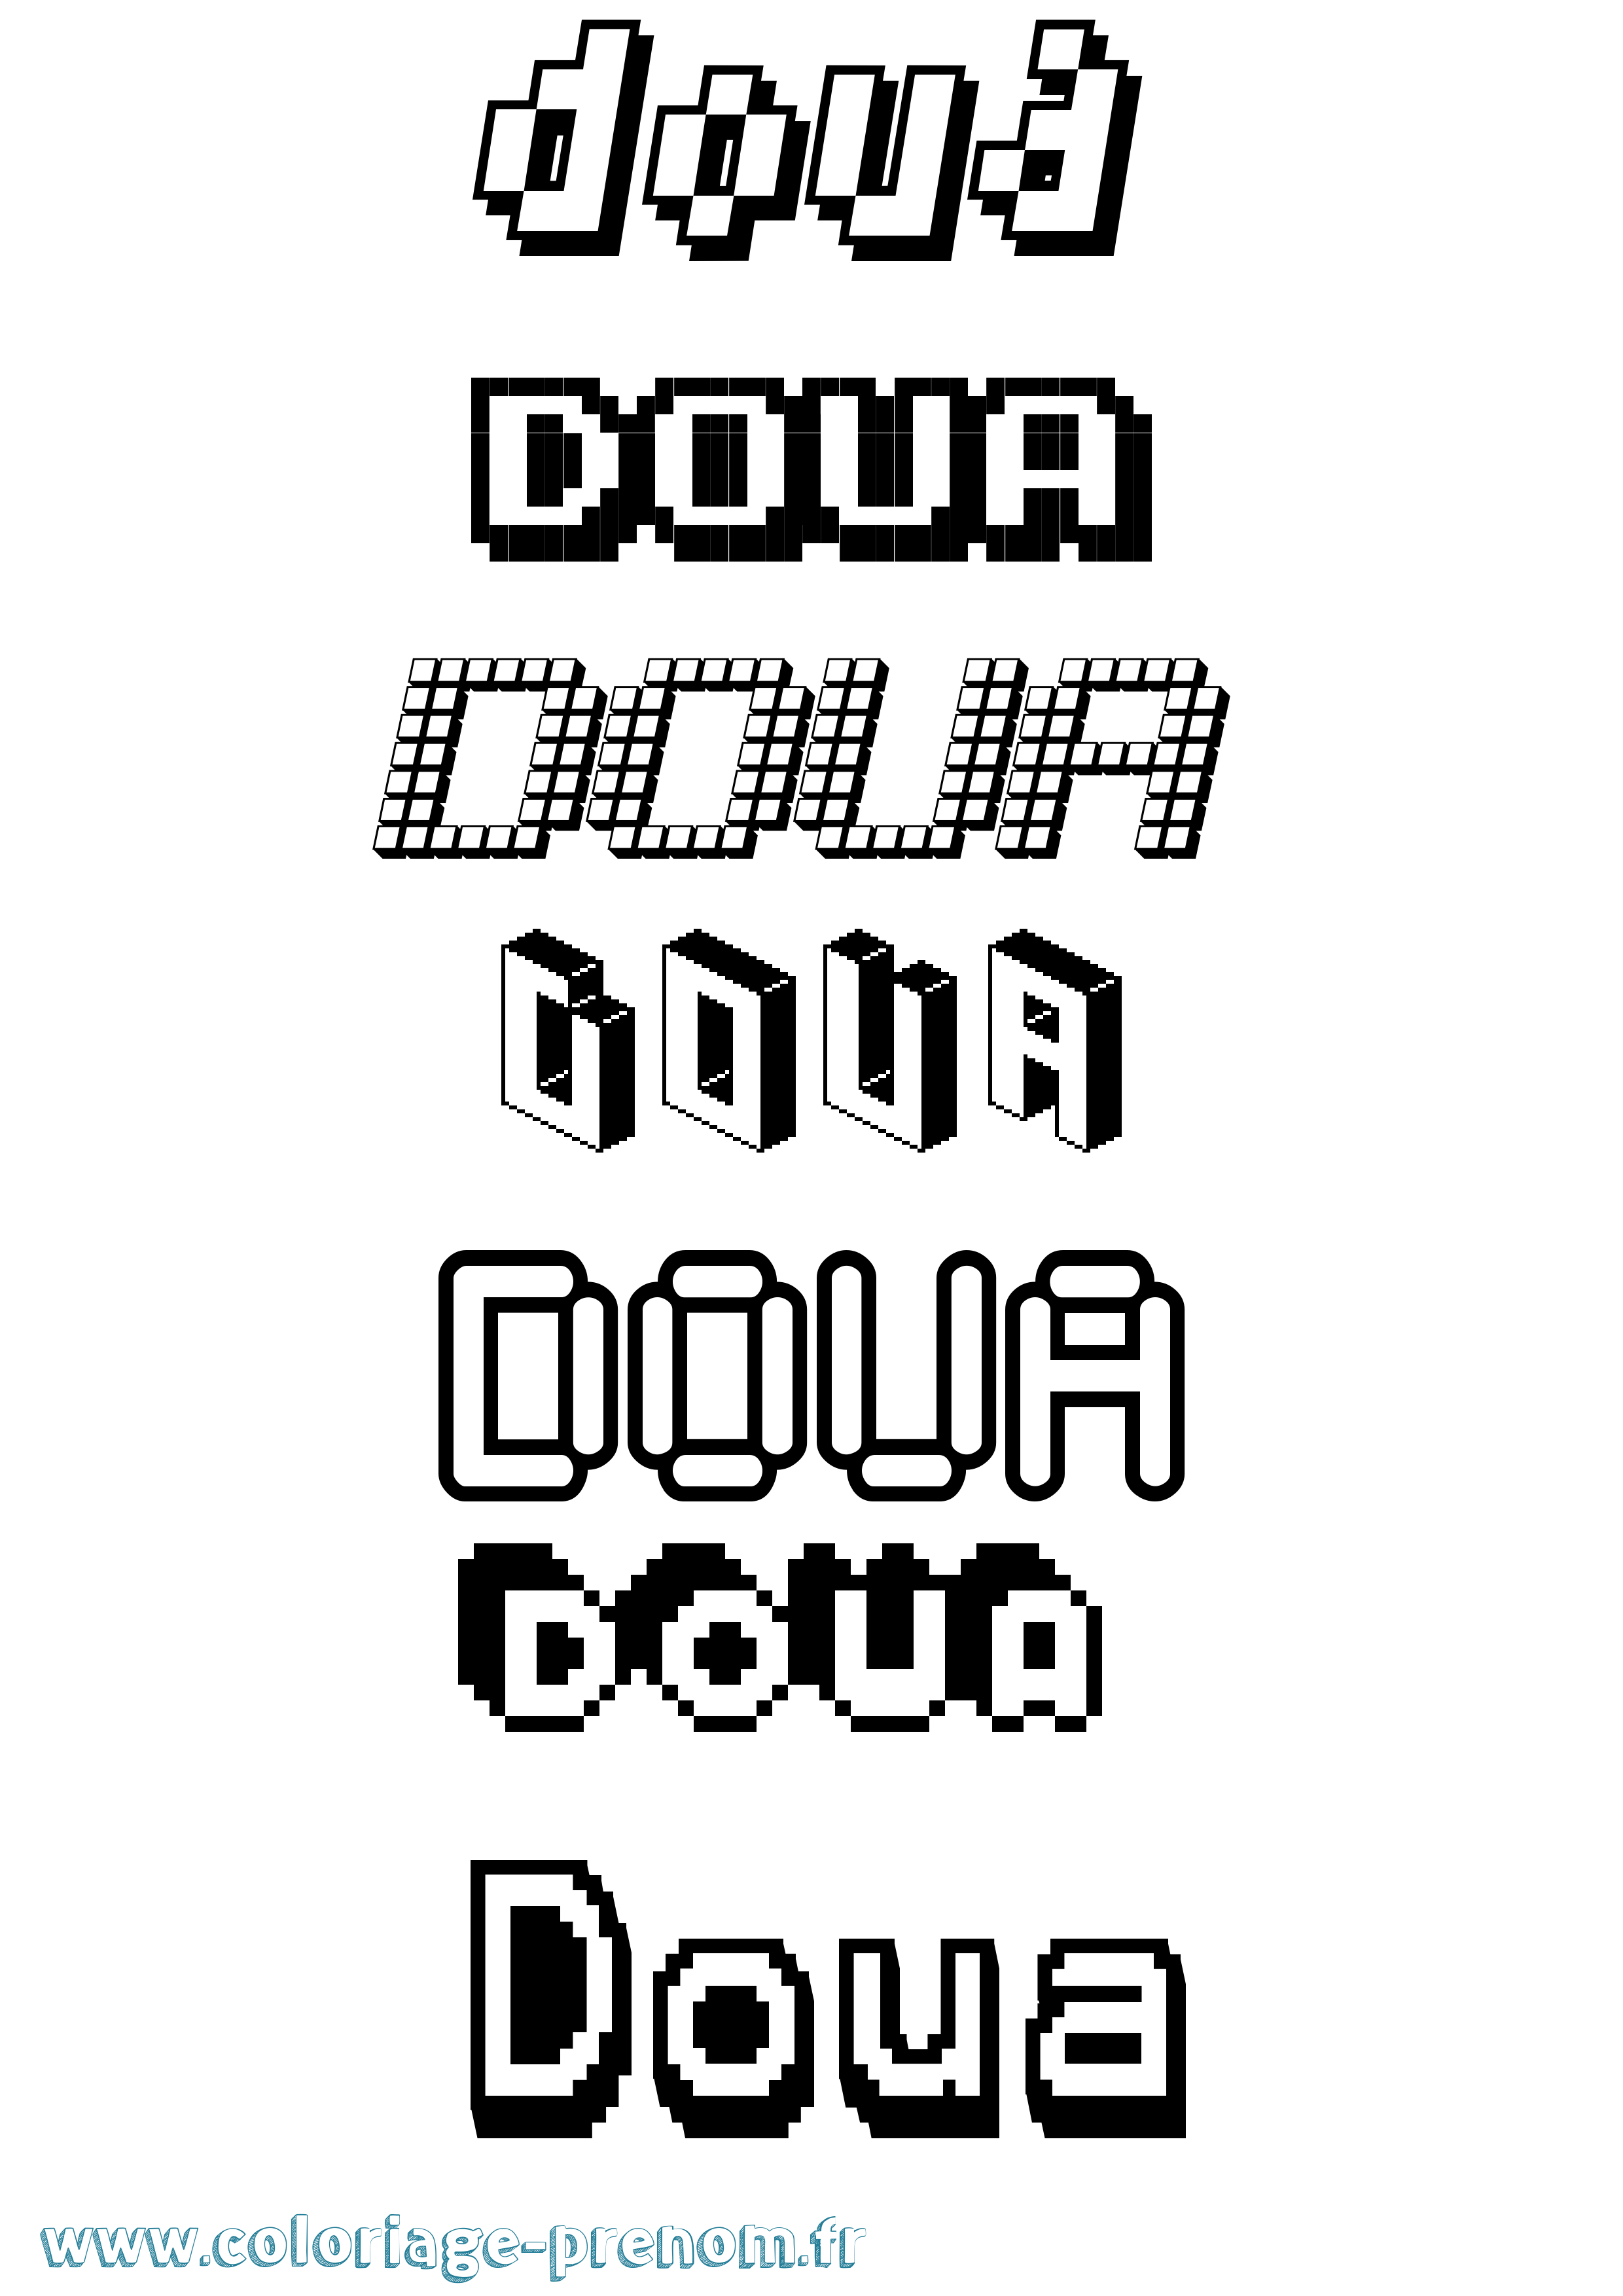 Coloriage prénom Doua Pixel